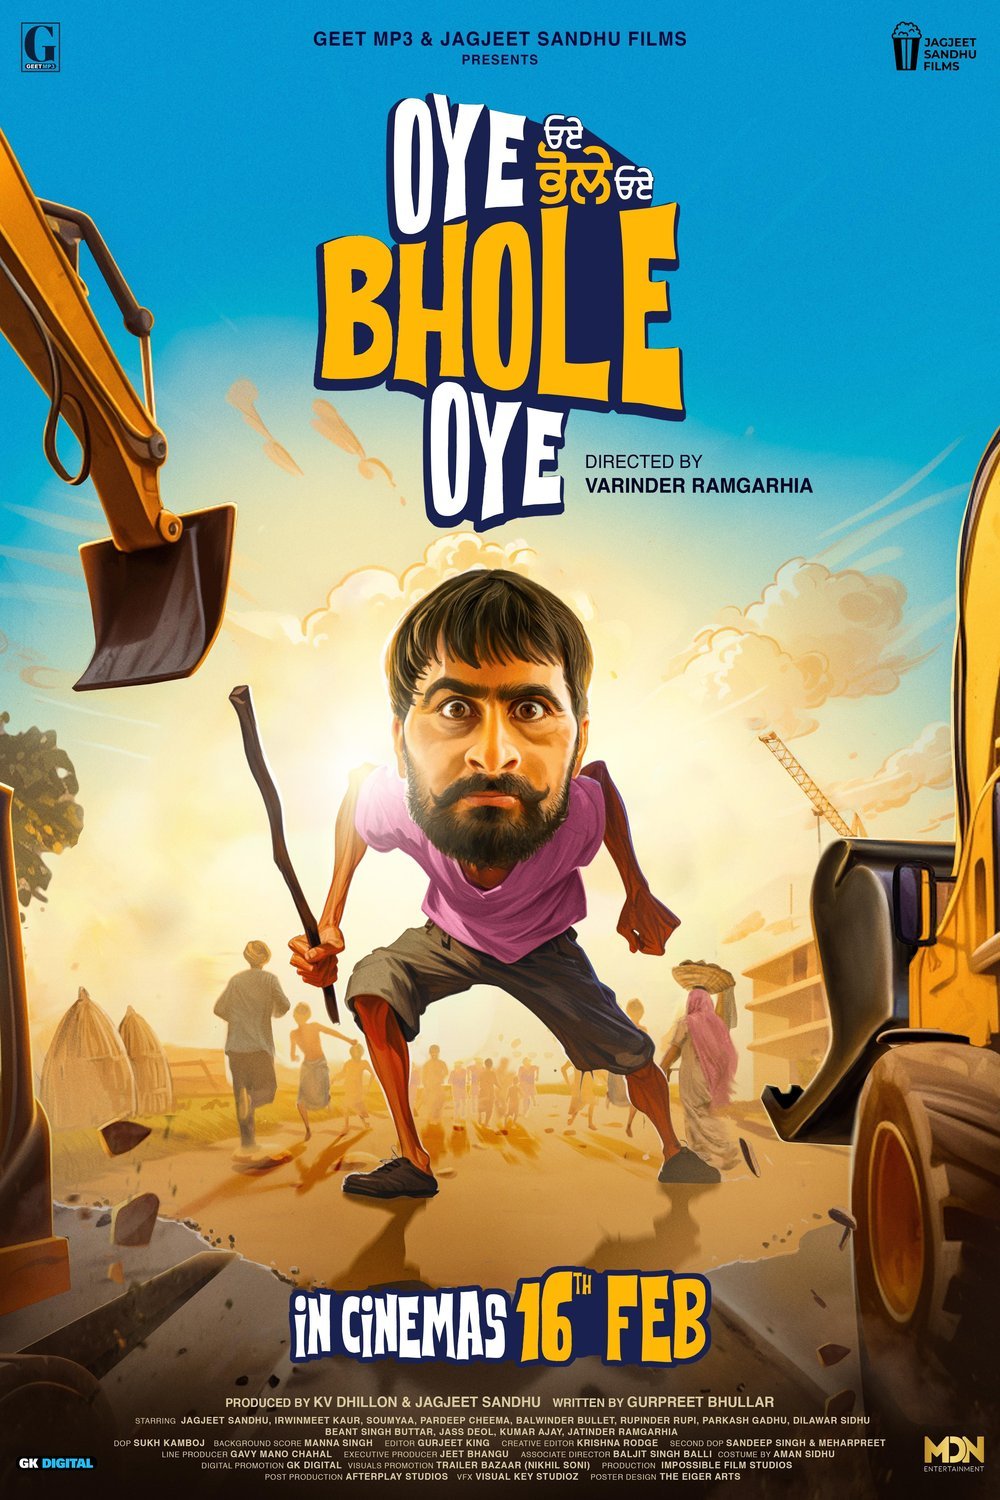 Punjabi poster of the movie Oye Bhole Oye